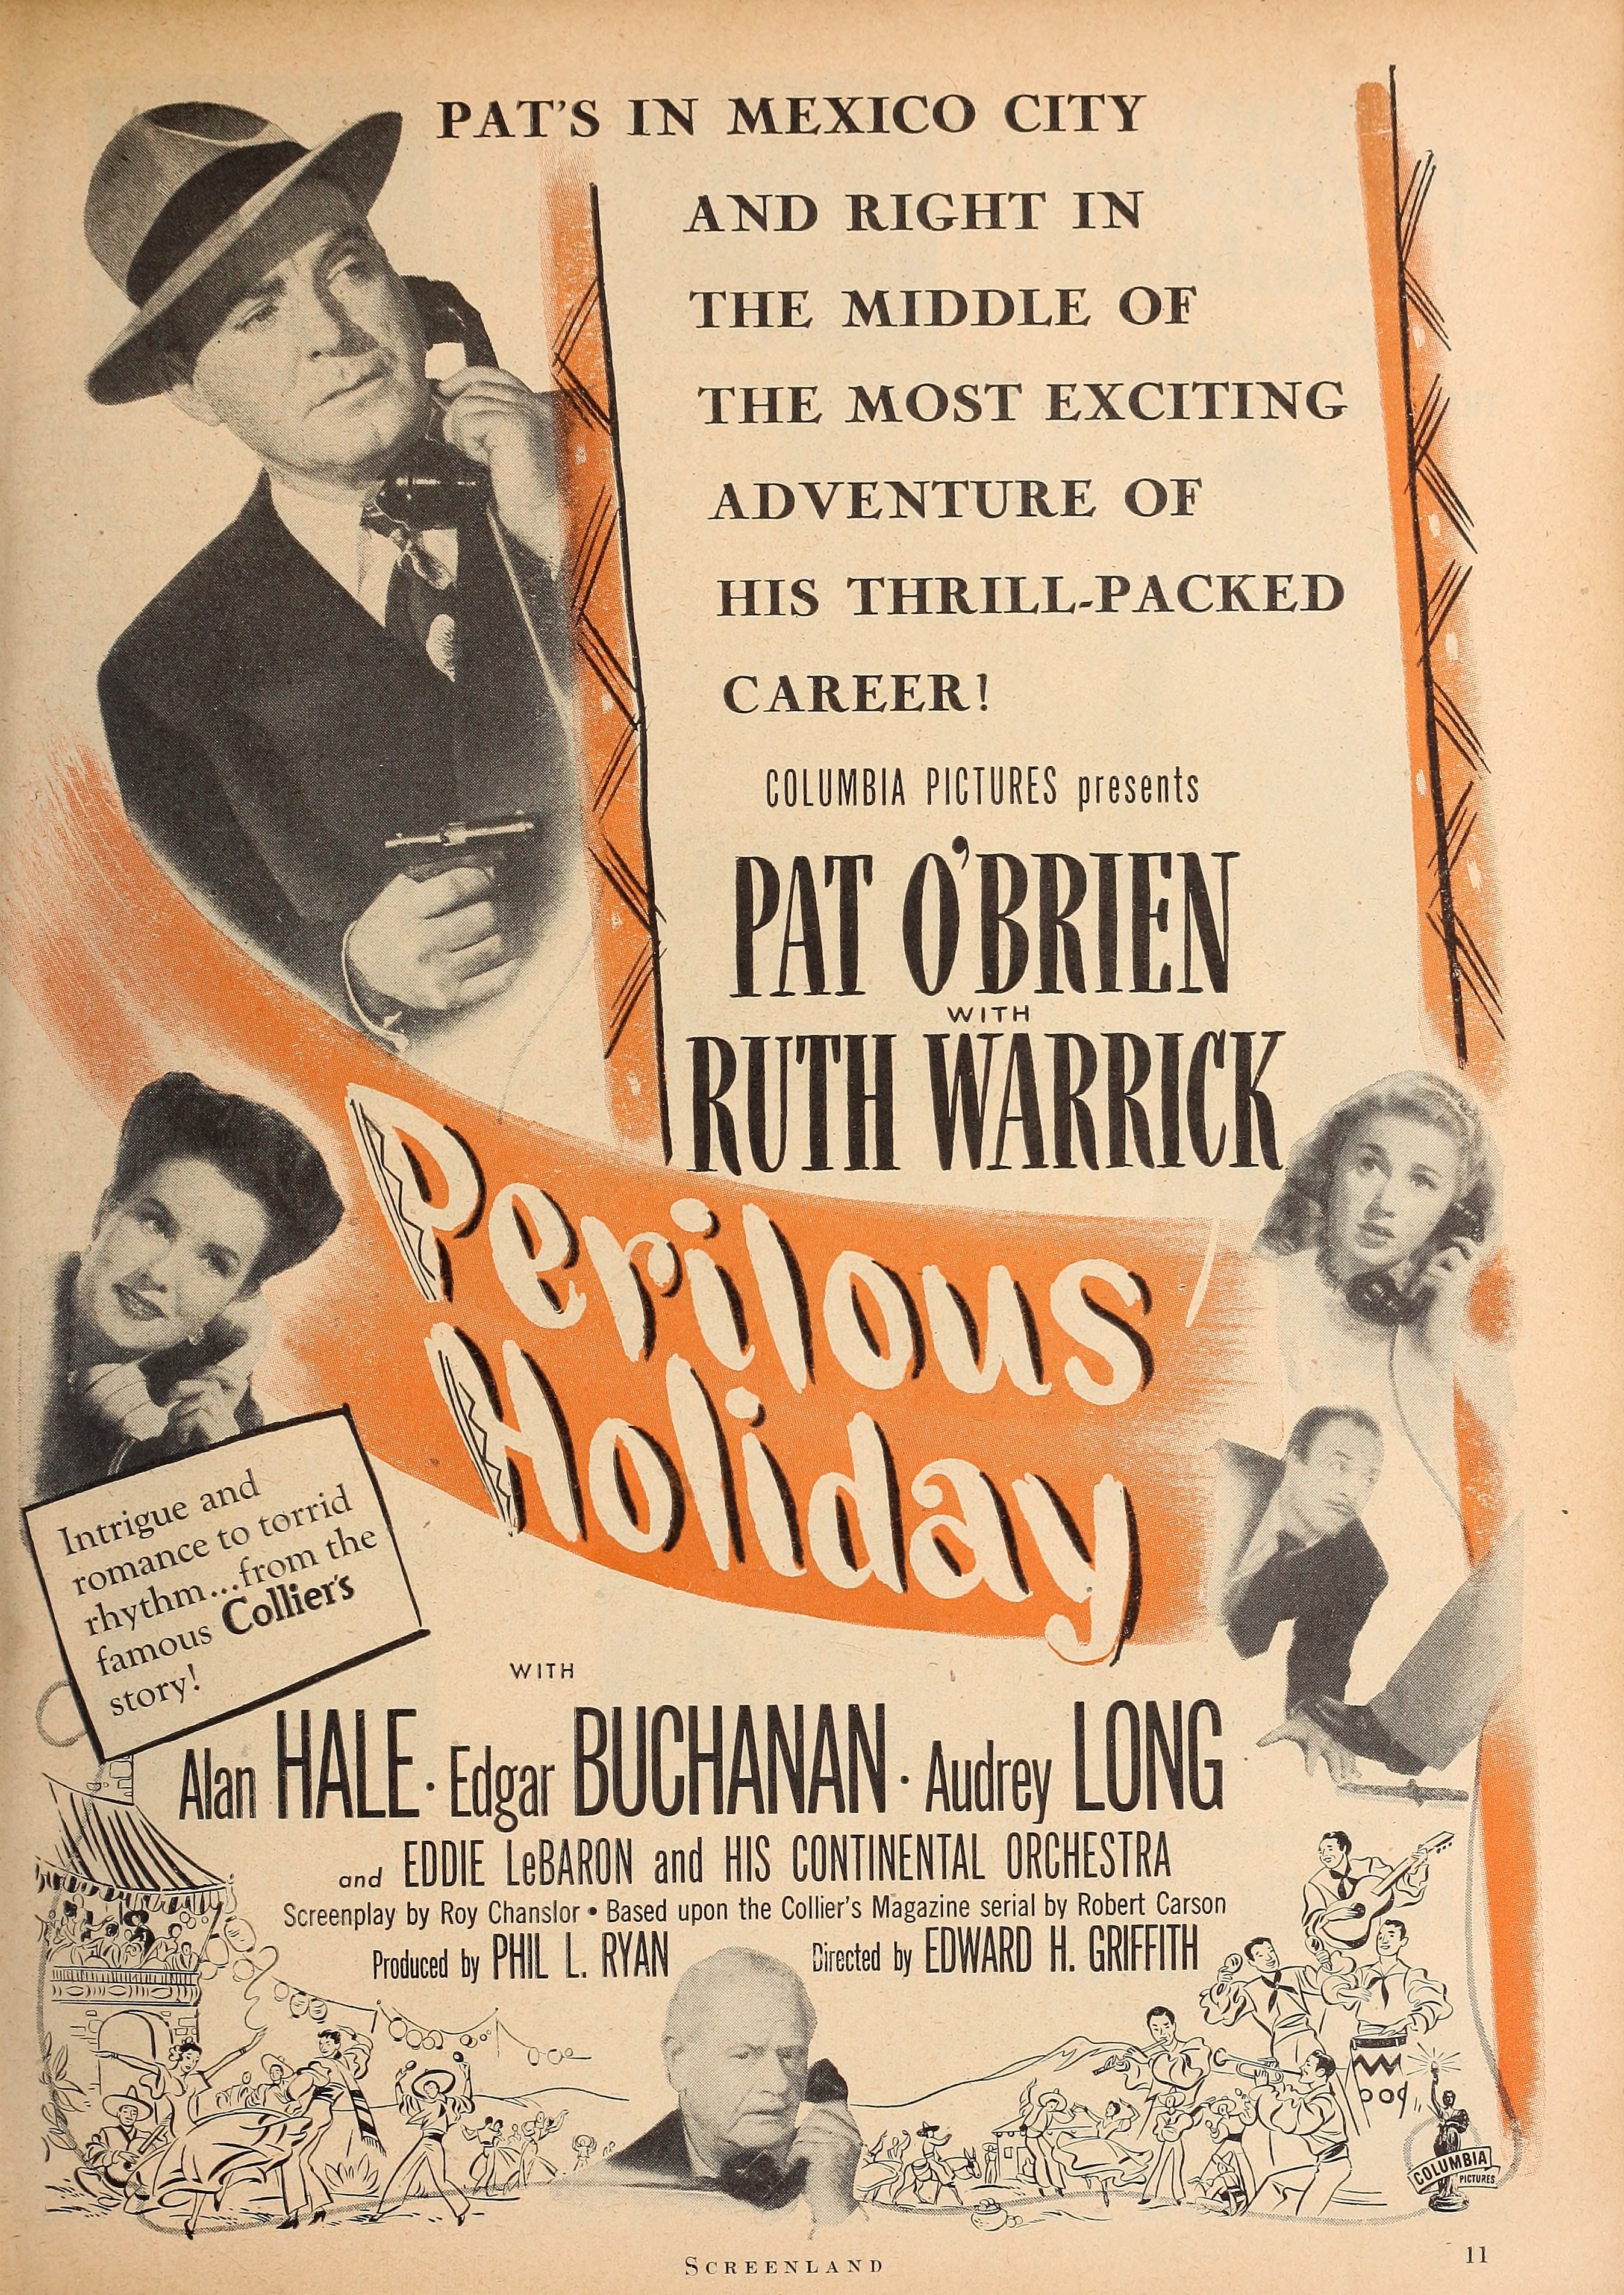 Perilous Holiday (1946) | www.vintoz.com